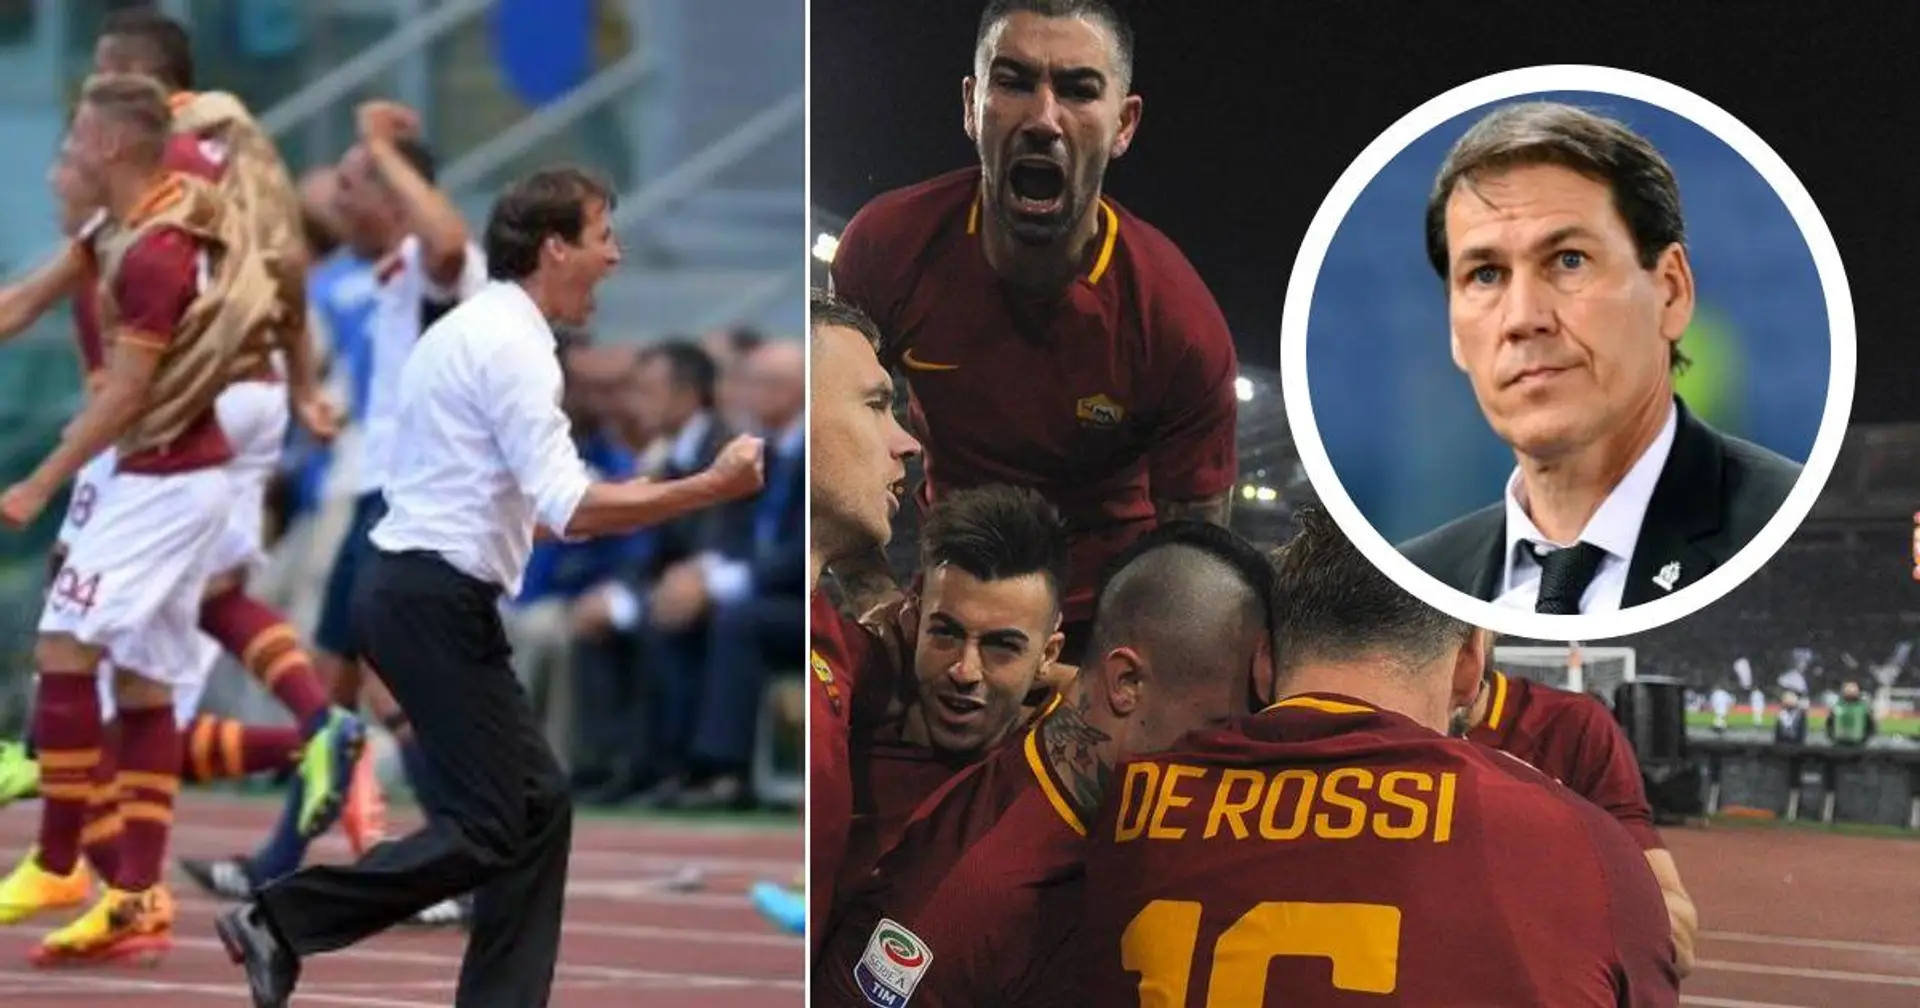 La gioia di un derby vinto e non solo: Rudi Garcia racconta i momenti più emozionanti vissuti a Roma 